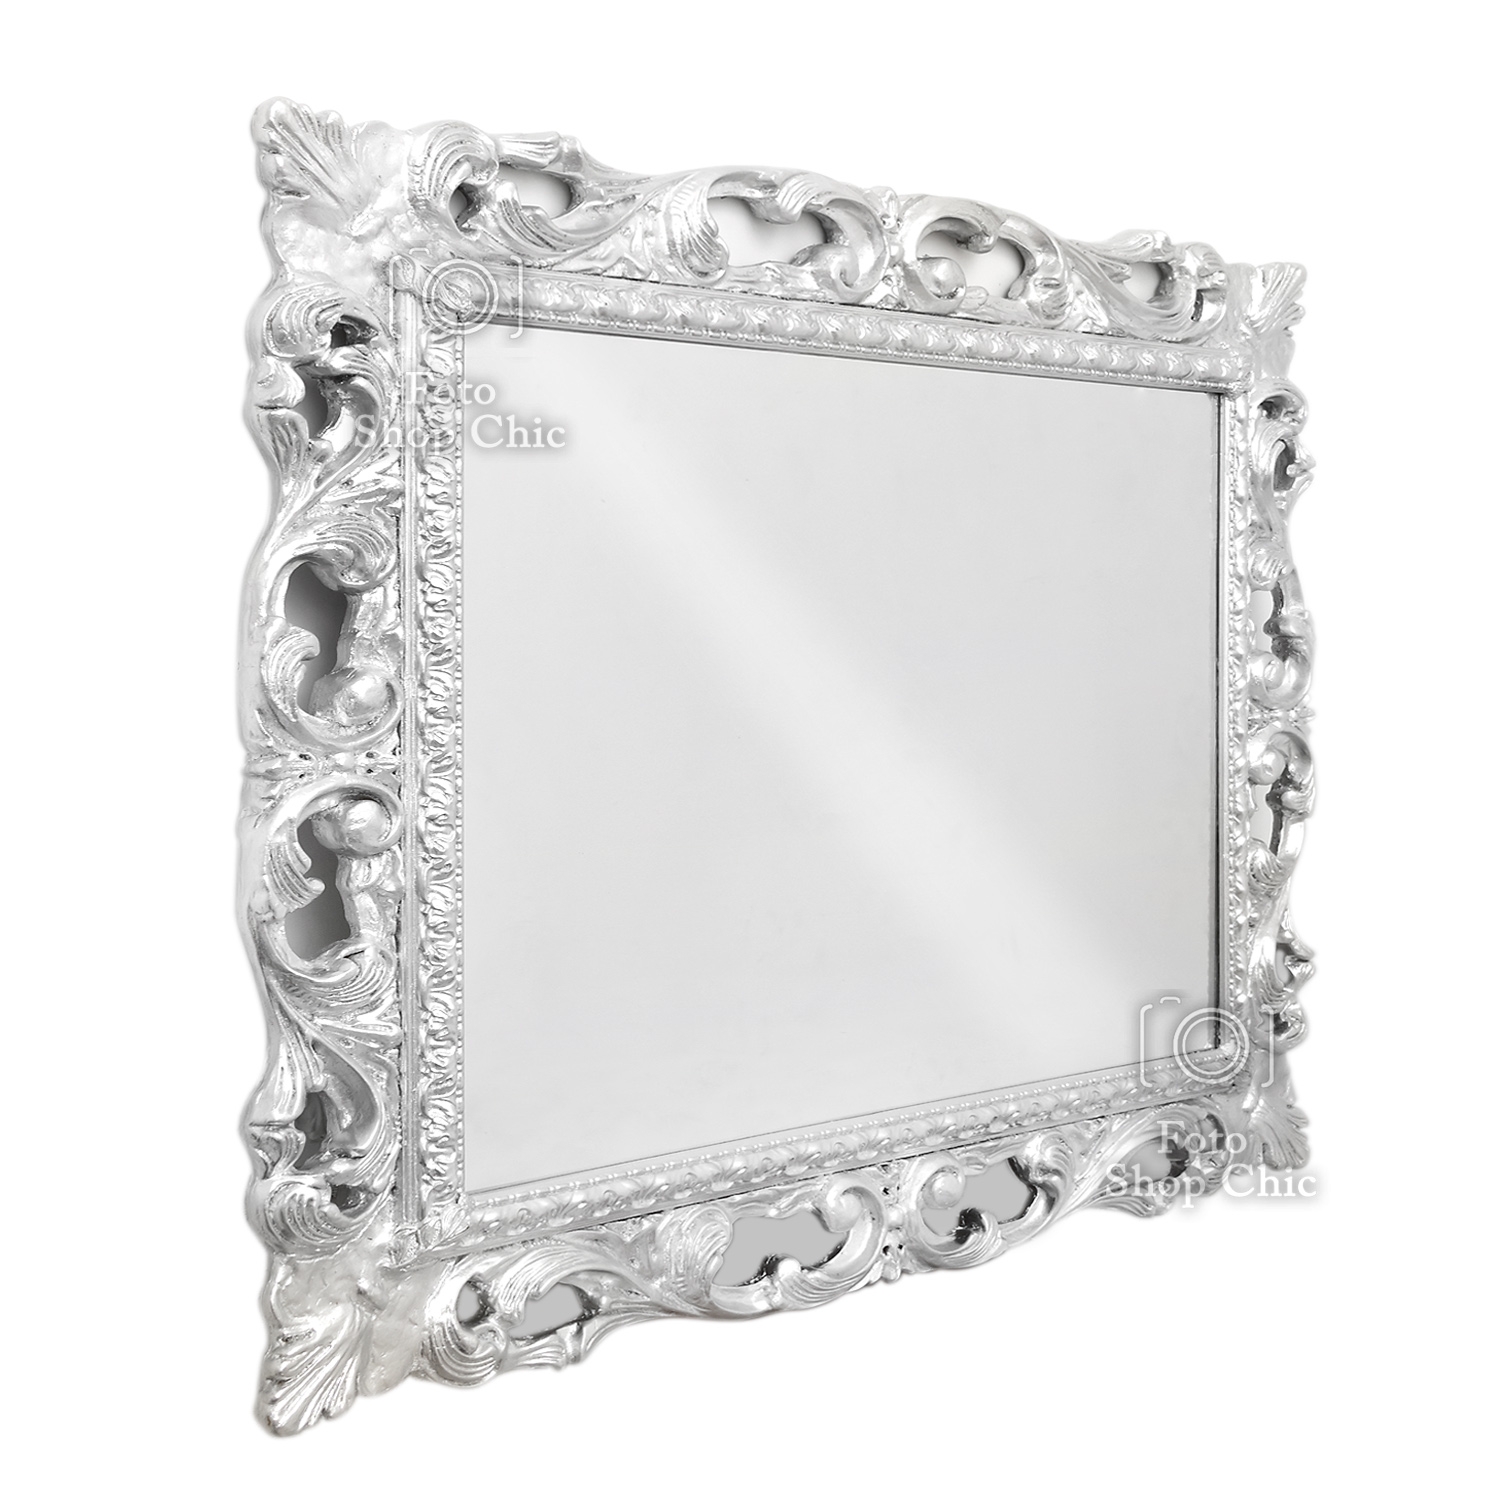 Specchio argento in stile barocco - Le Chic Arredamenti